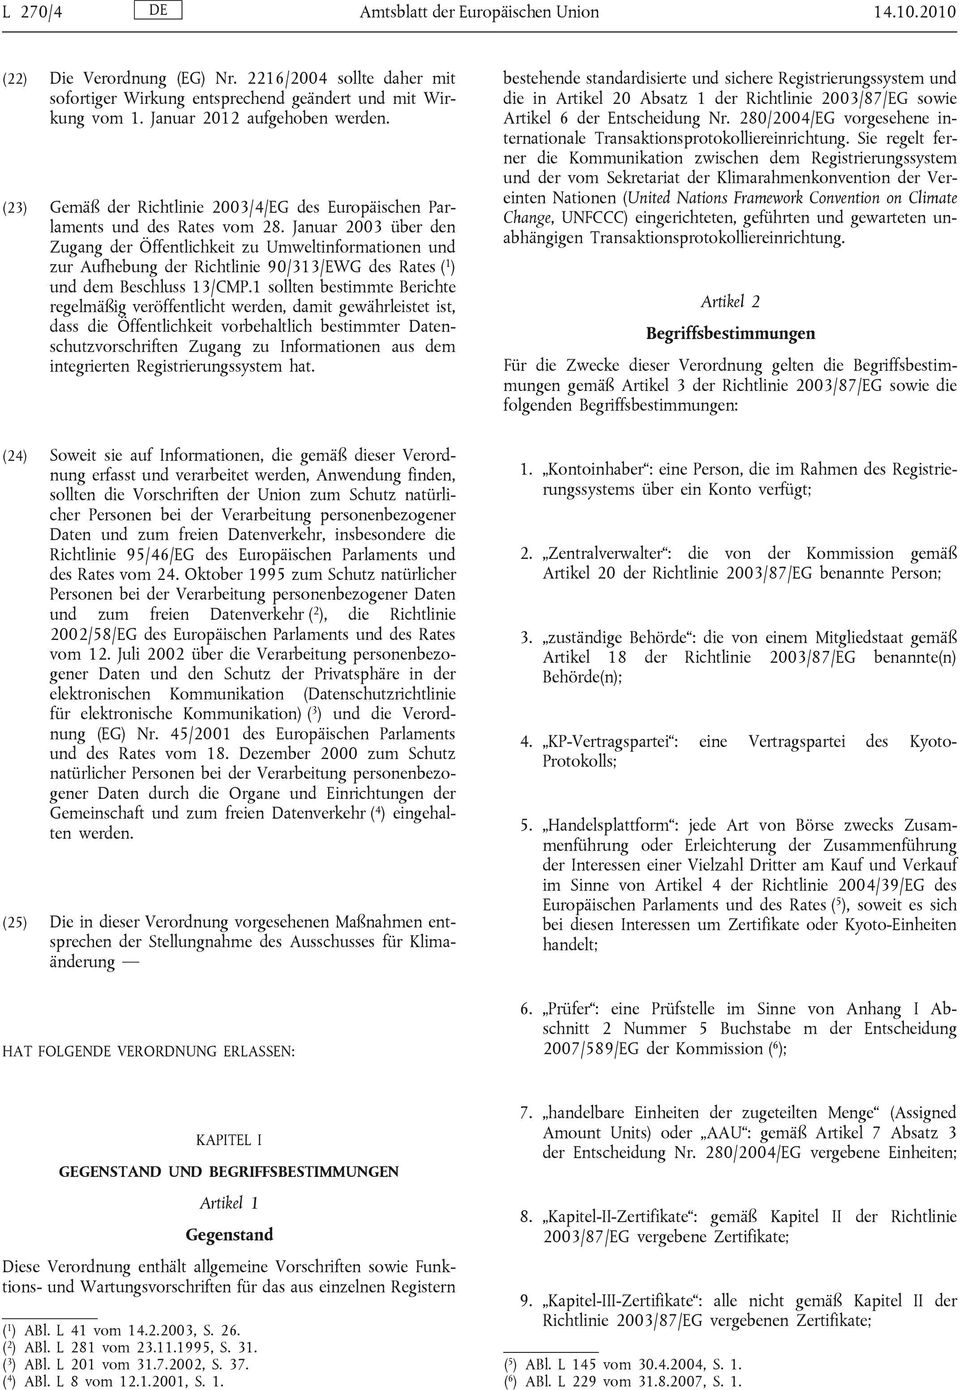 Januar 2003 über den Zugang der Öffentlichkeit zu Umweltinformationen und zur Aufhebung der Richtlinie 90/313/EWG des Rates ( 1 ) und dem Beschluss 13/CMP.